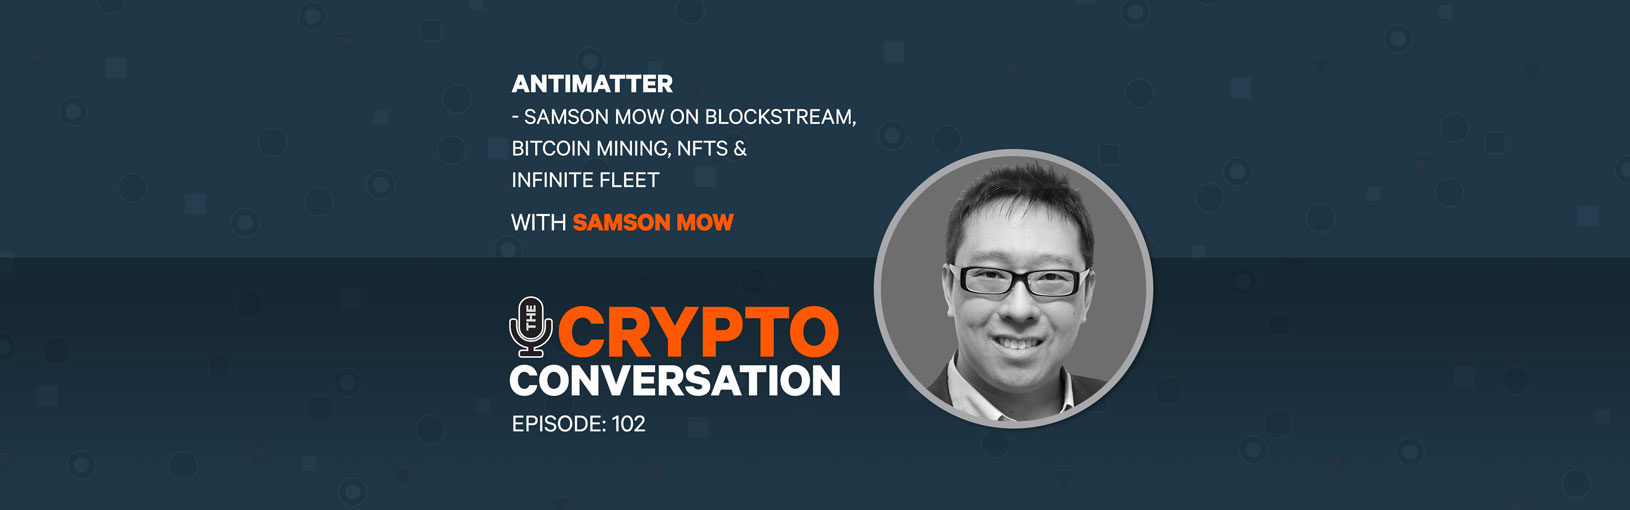 Samson Mow on Blockstream, Seetee, Bitcoin Mining, NFTs & Infinite Fleet